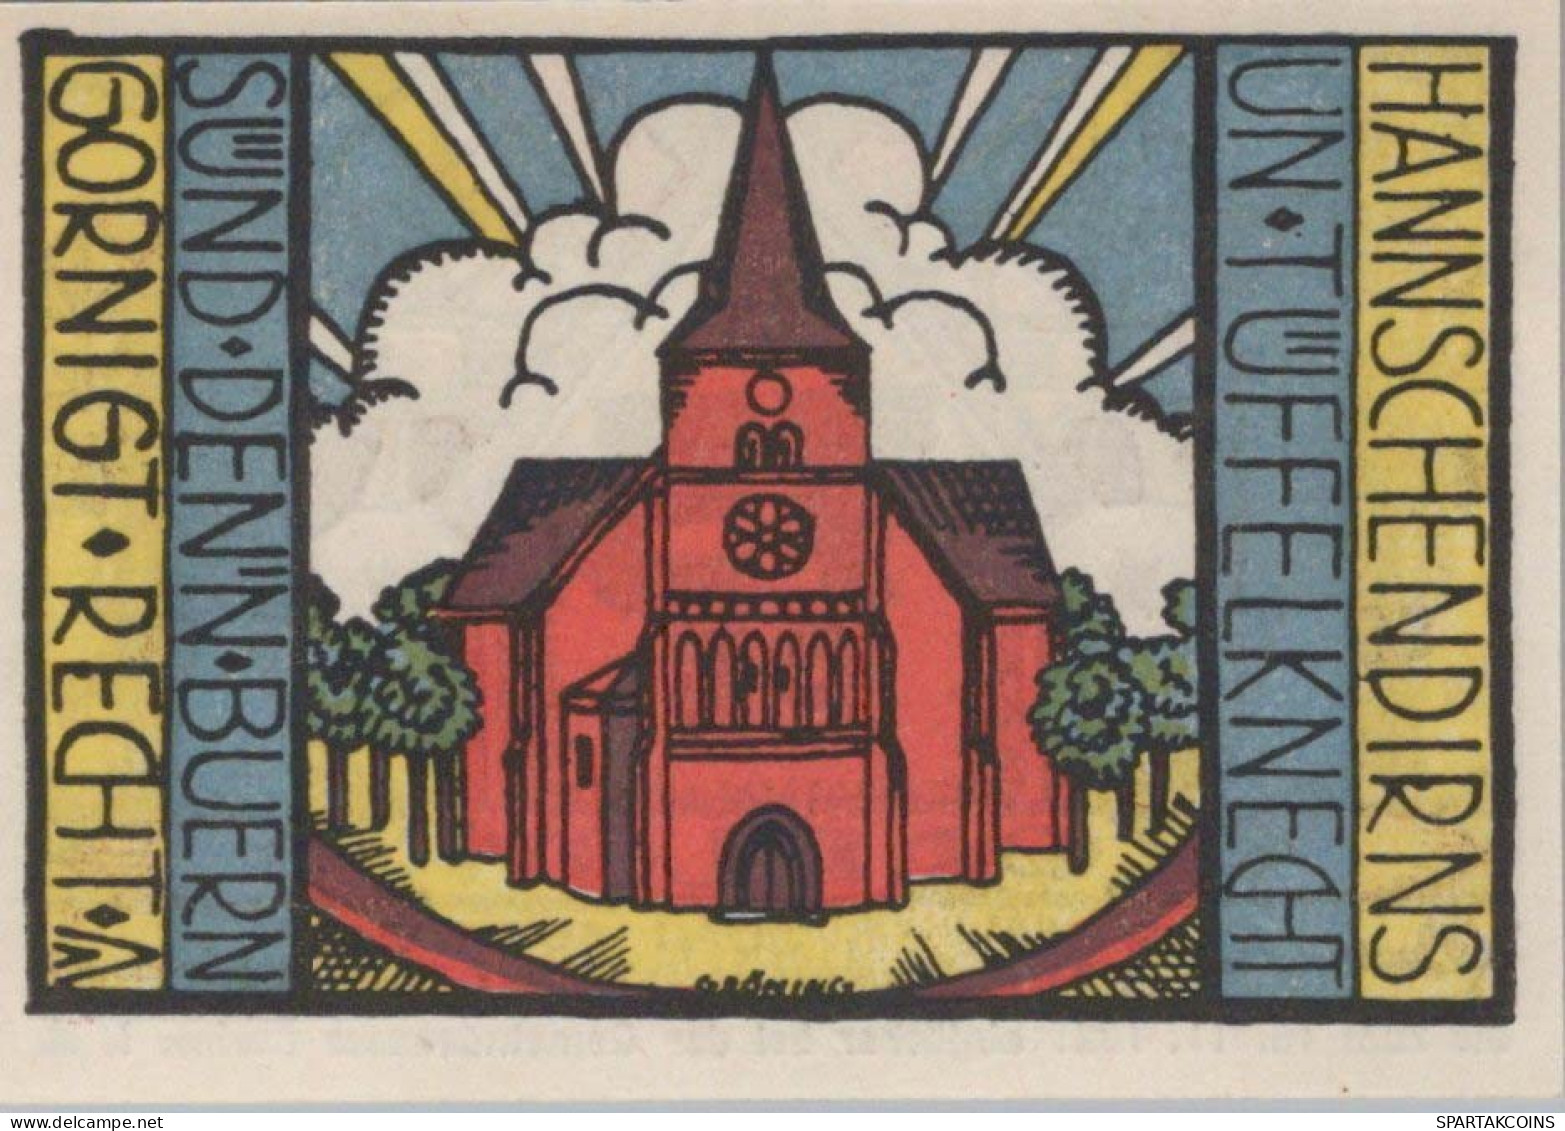 75 PFENNIG 1921 Stadt CARLOW Mecklenburg-Strelitz UNC DEUTSCHLAND Notgeld #PA378 - [11] Emissioni Locali